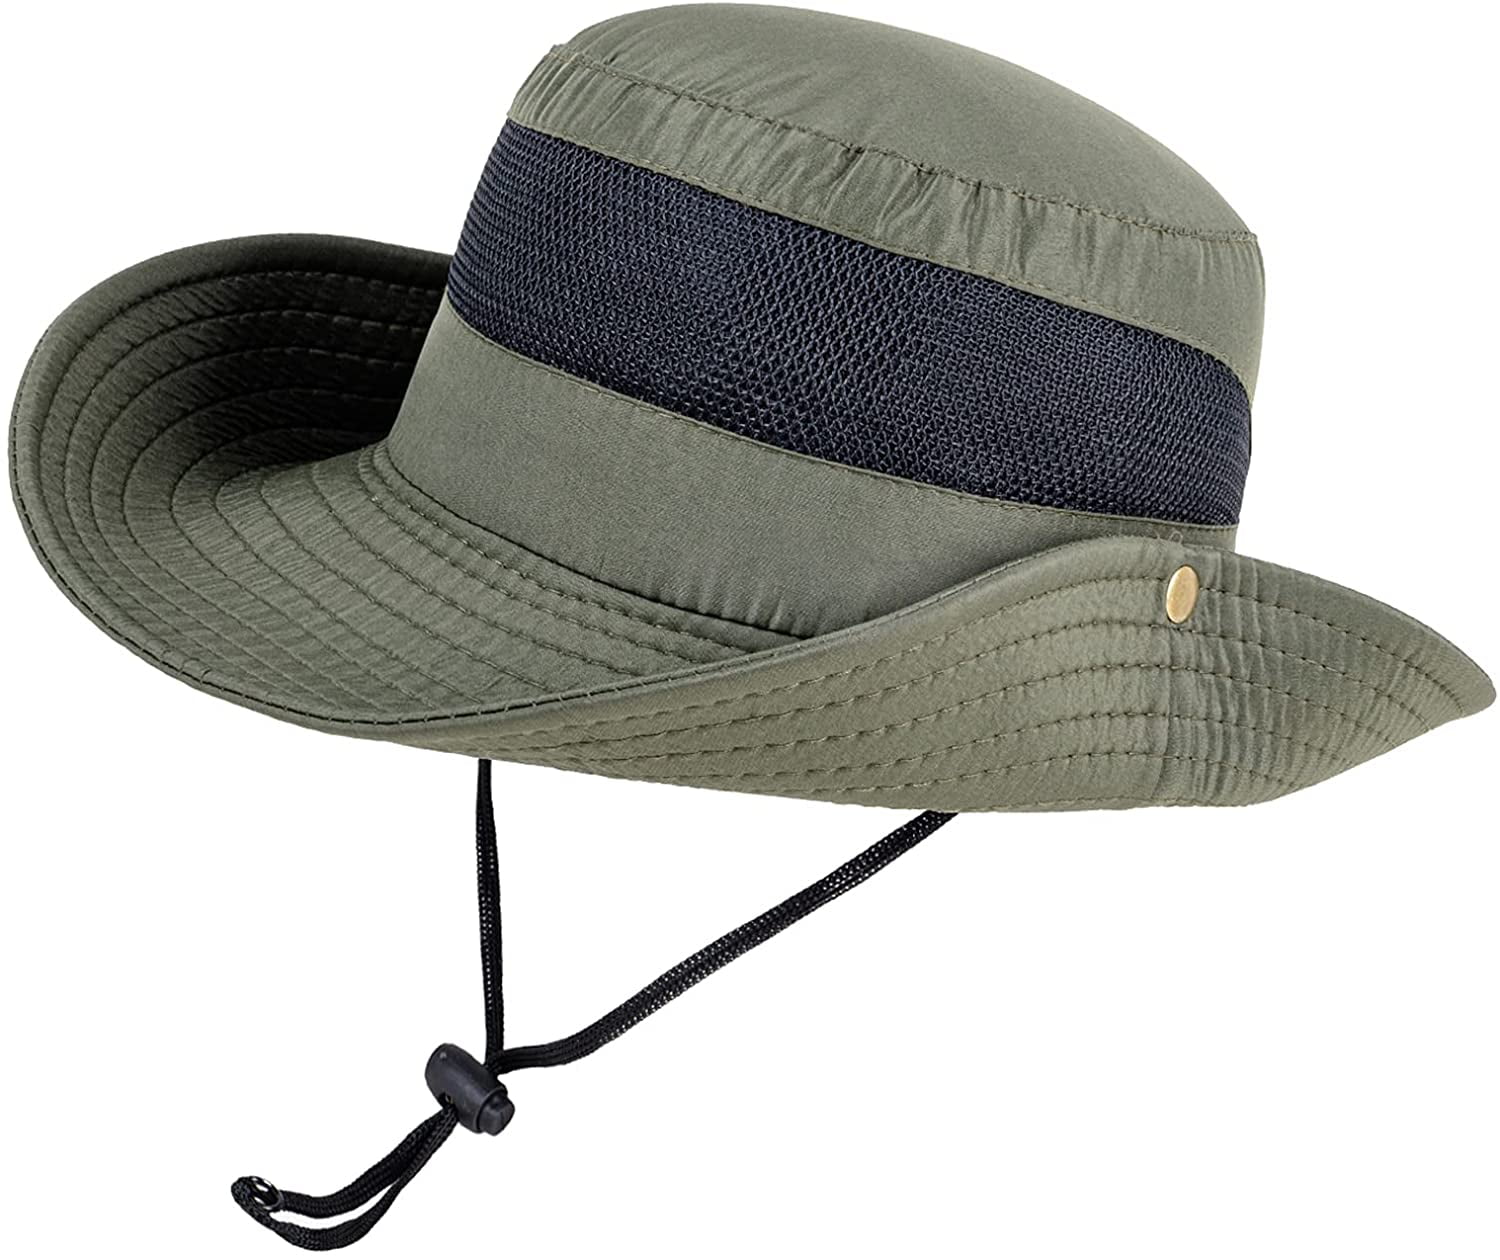 VONTER Fishing Hat and Safari Cap with Sun Protection Unisex Wide Brim Sun  Hat,Premium UPF 50+ Hats UV Protection Sun Caps Camping Hiking Fishing 